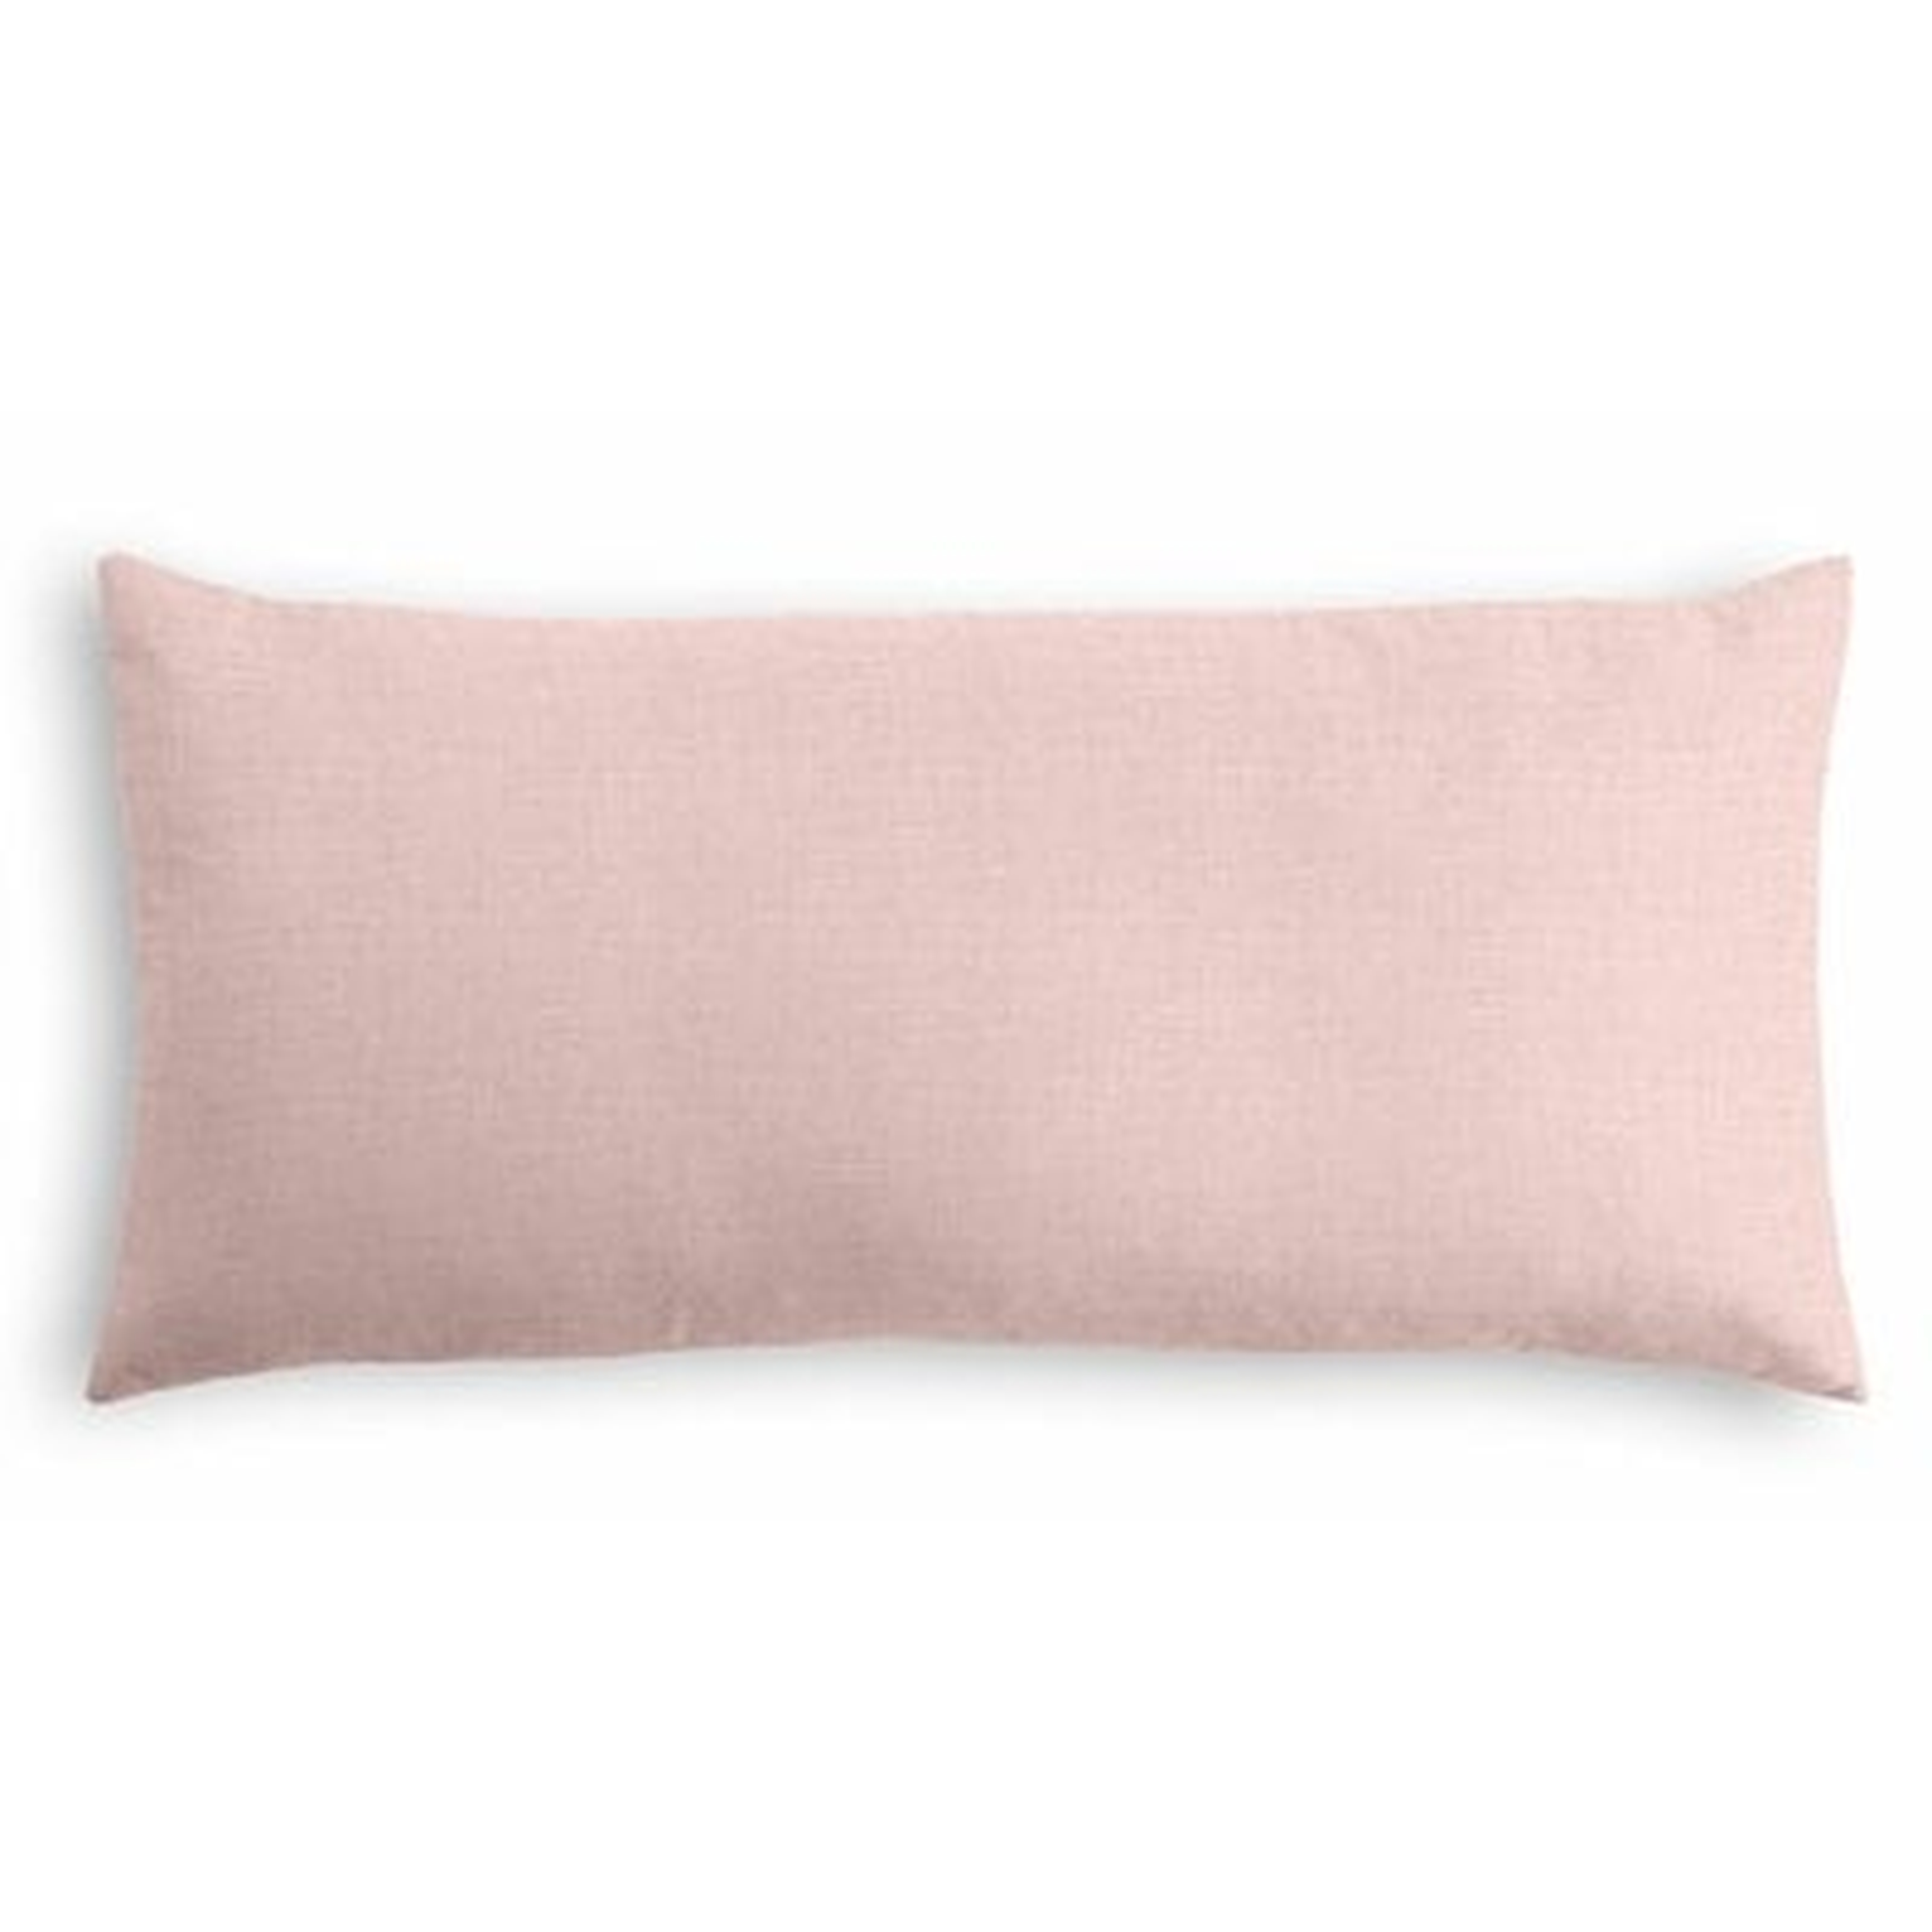 Heracleitus Lumbar Pillow Cover - Wayfair